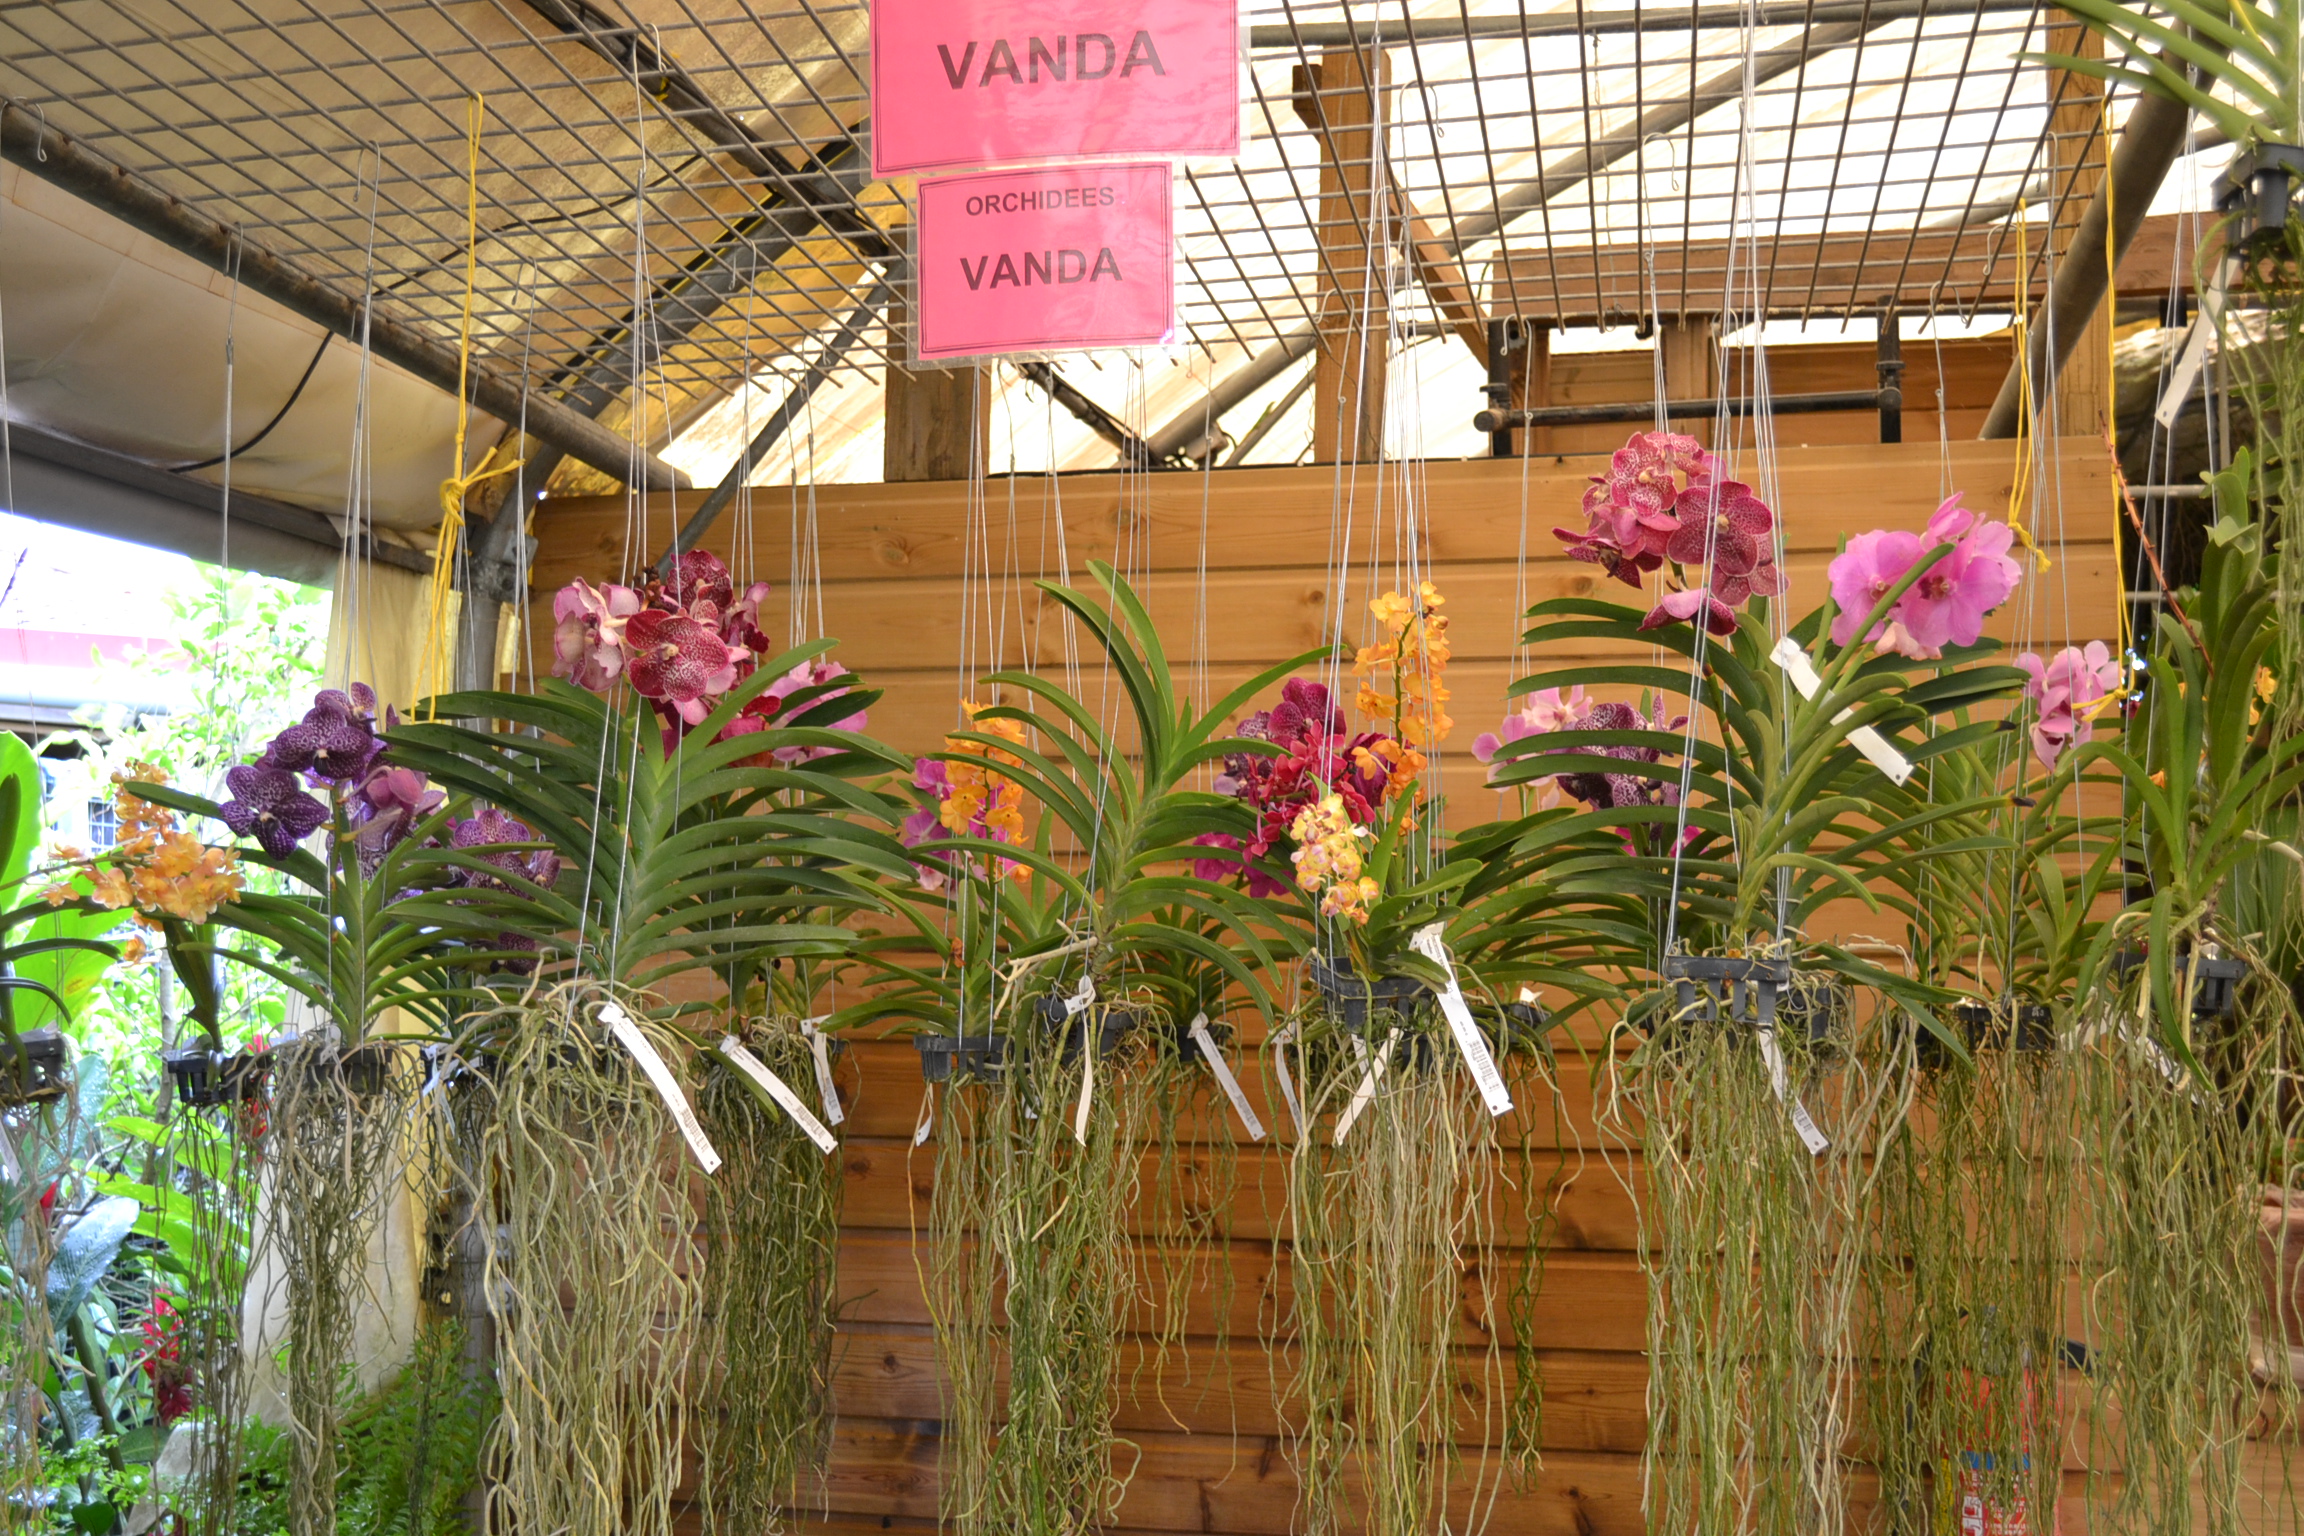 Où acheter une orchidée Vanda en Martinique ?